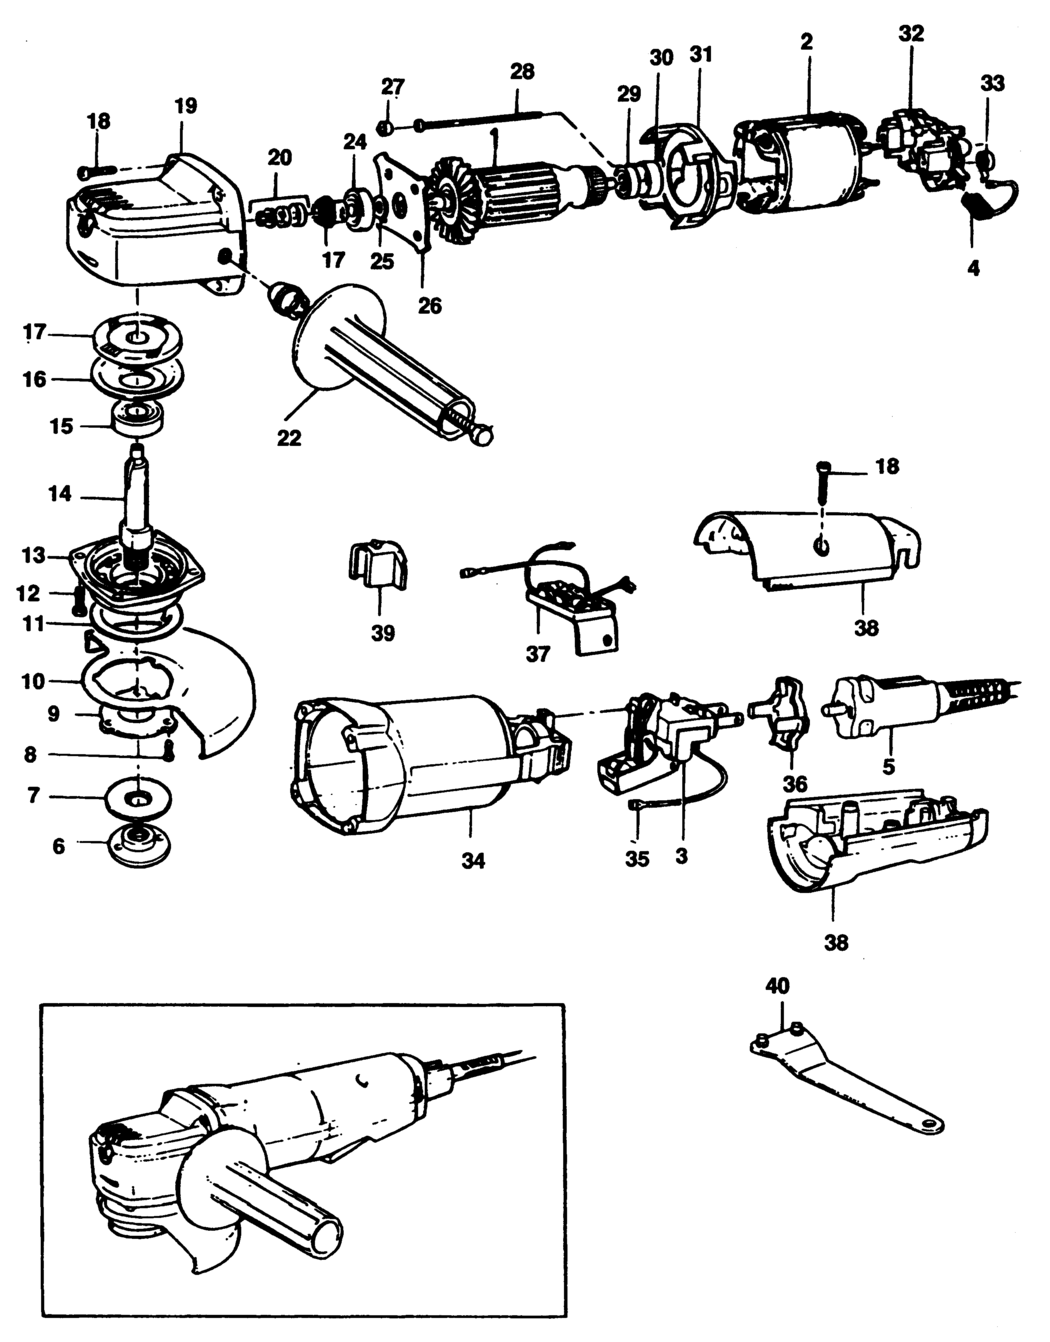 Black & Decker P5513 Type 1 Bodygrip Sander Spare Parts